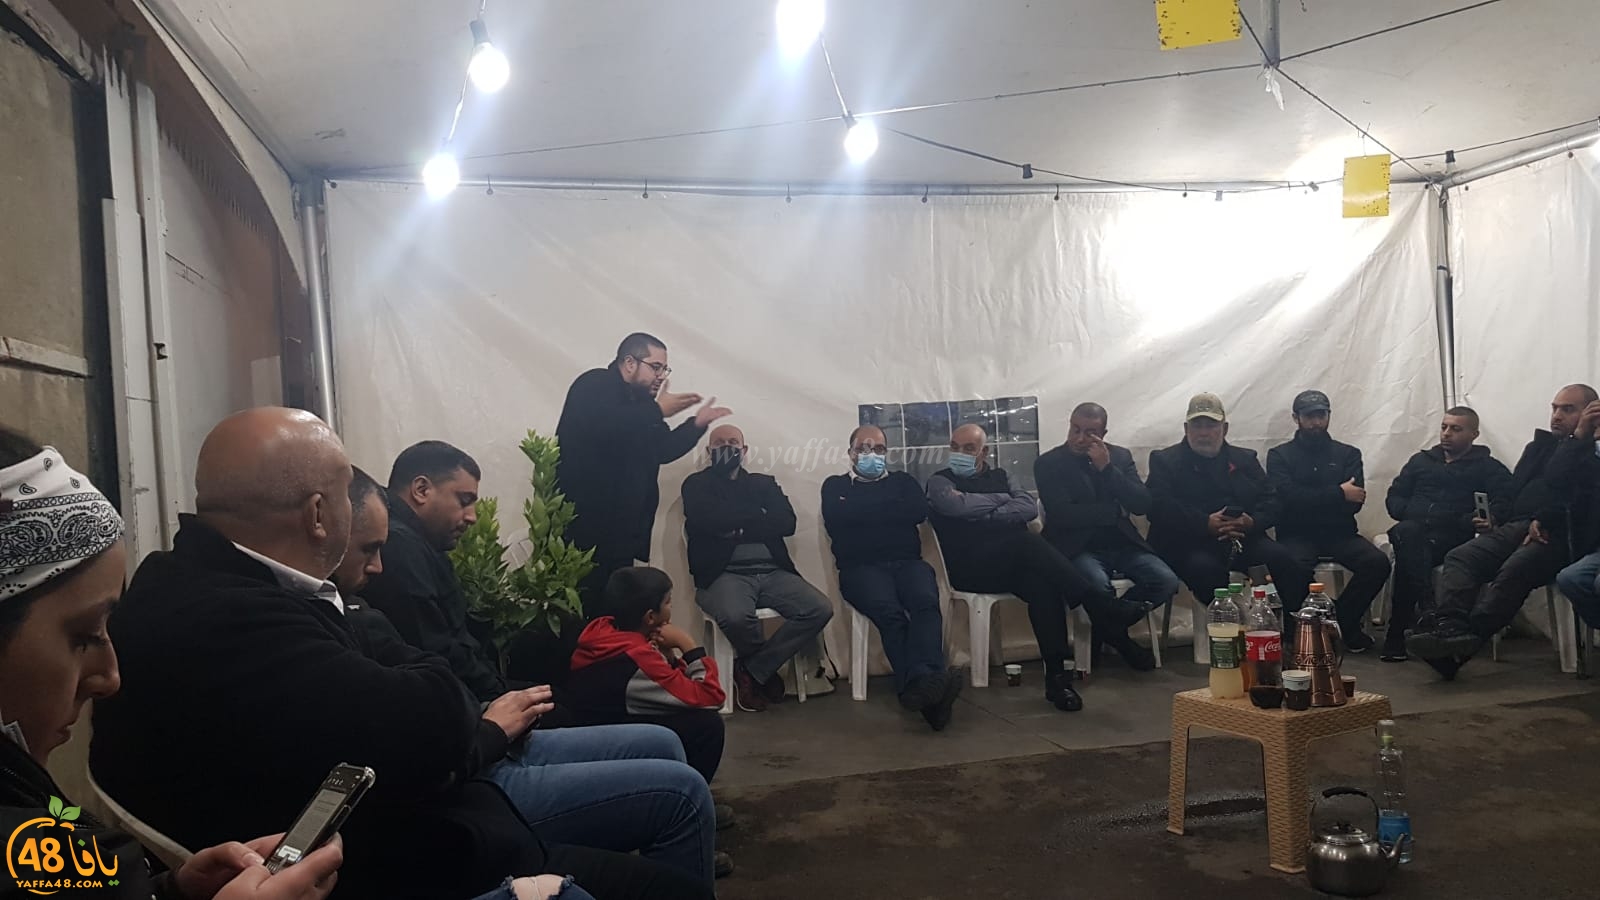  اللد: اجتماع موسّع في خيمة الاعتصام بحي شنير لبحث وقف هدم 40 بيتاً عربياً 